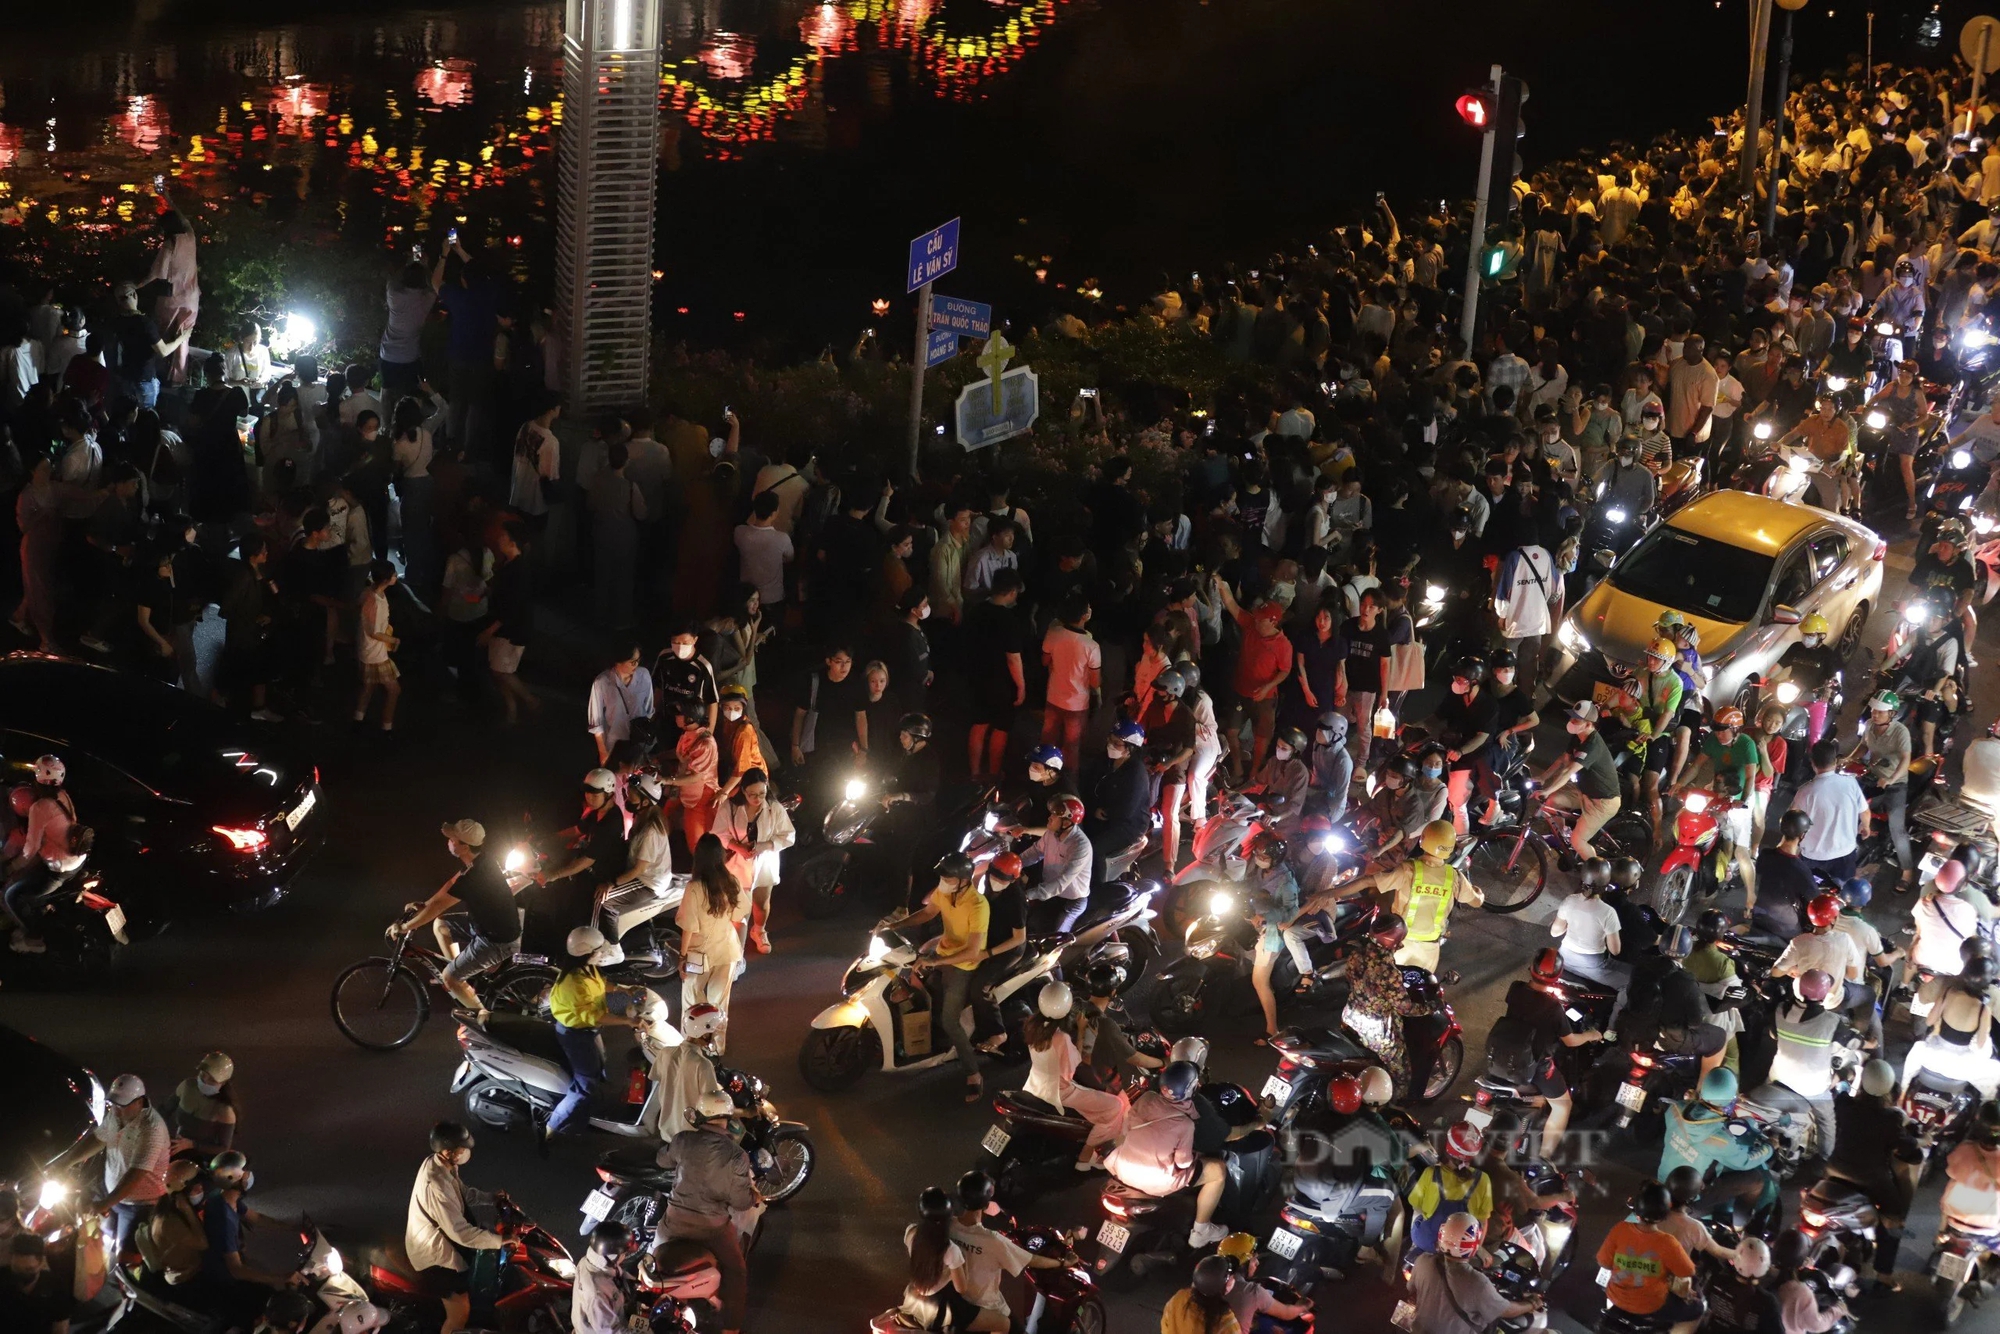 Lung linh ánh đèn hoa đăng trên kênh Nhiêu Lộc - Thị Nghè mừng lễ Phật đản- Ảnh 2.